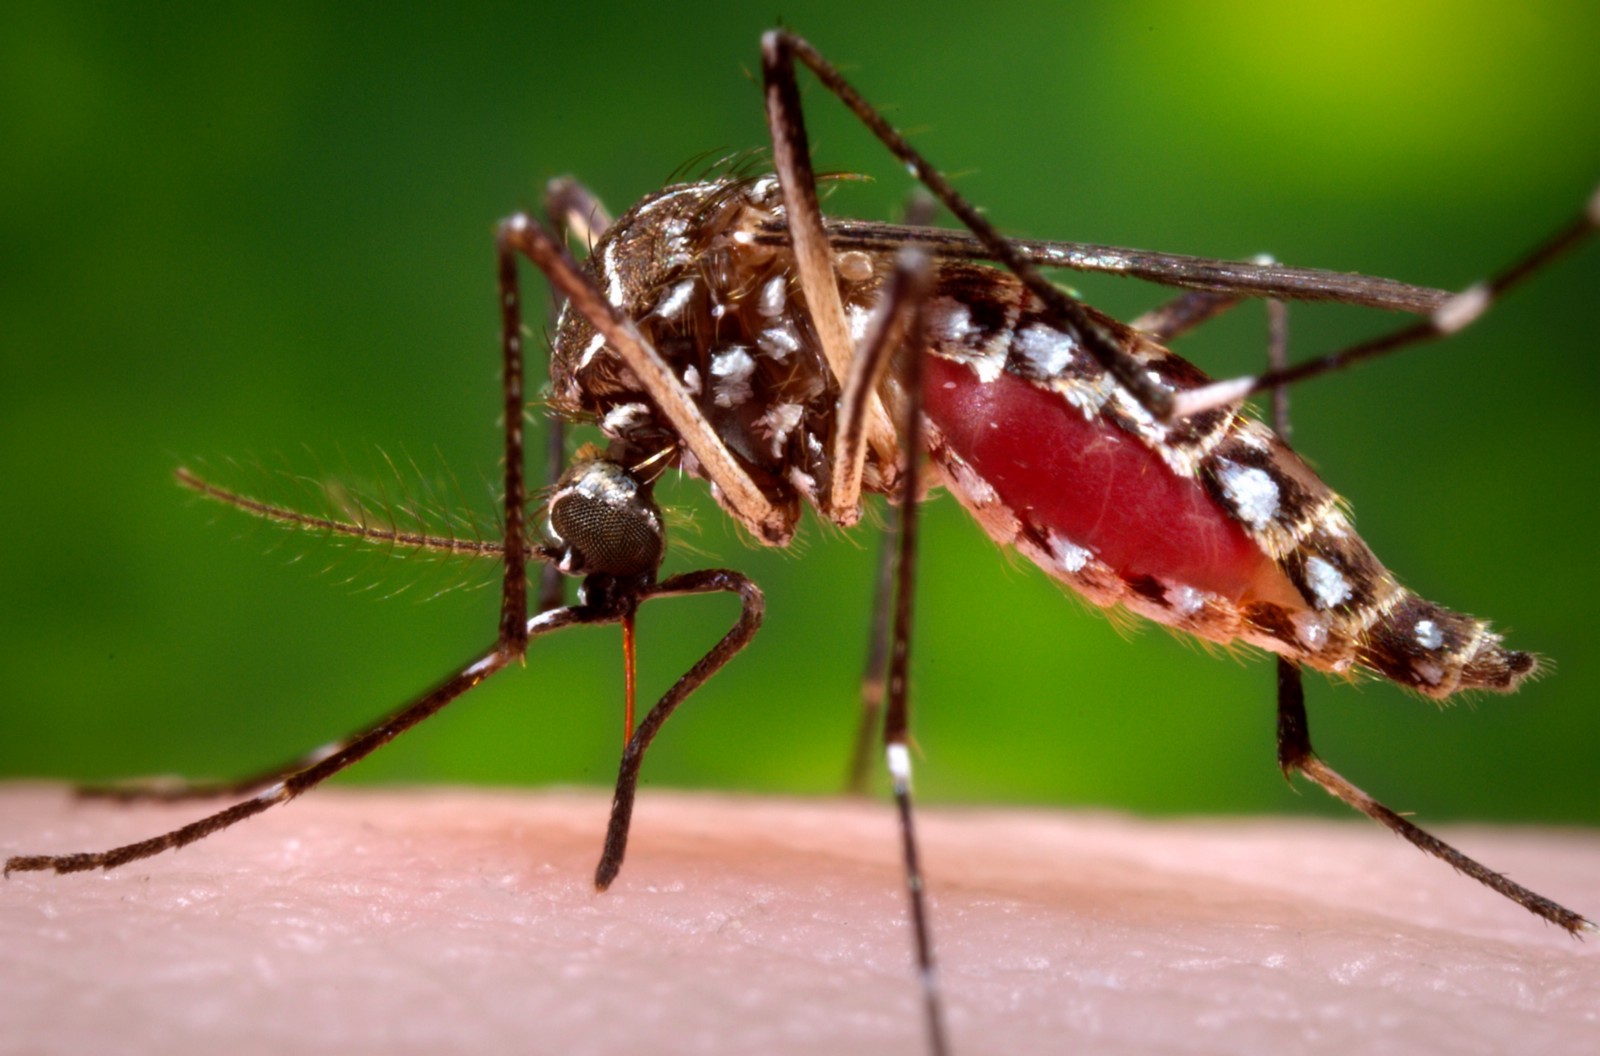 Pedreira soma 297 casos de Dengue em 2020